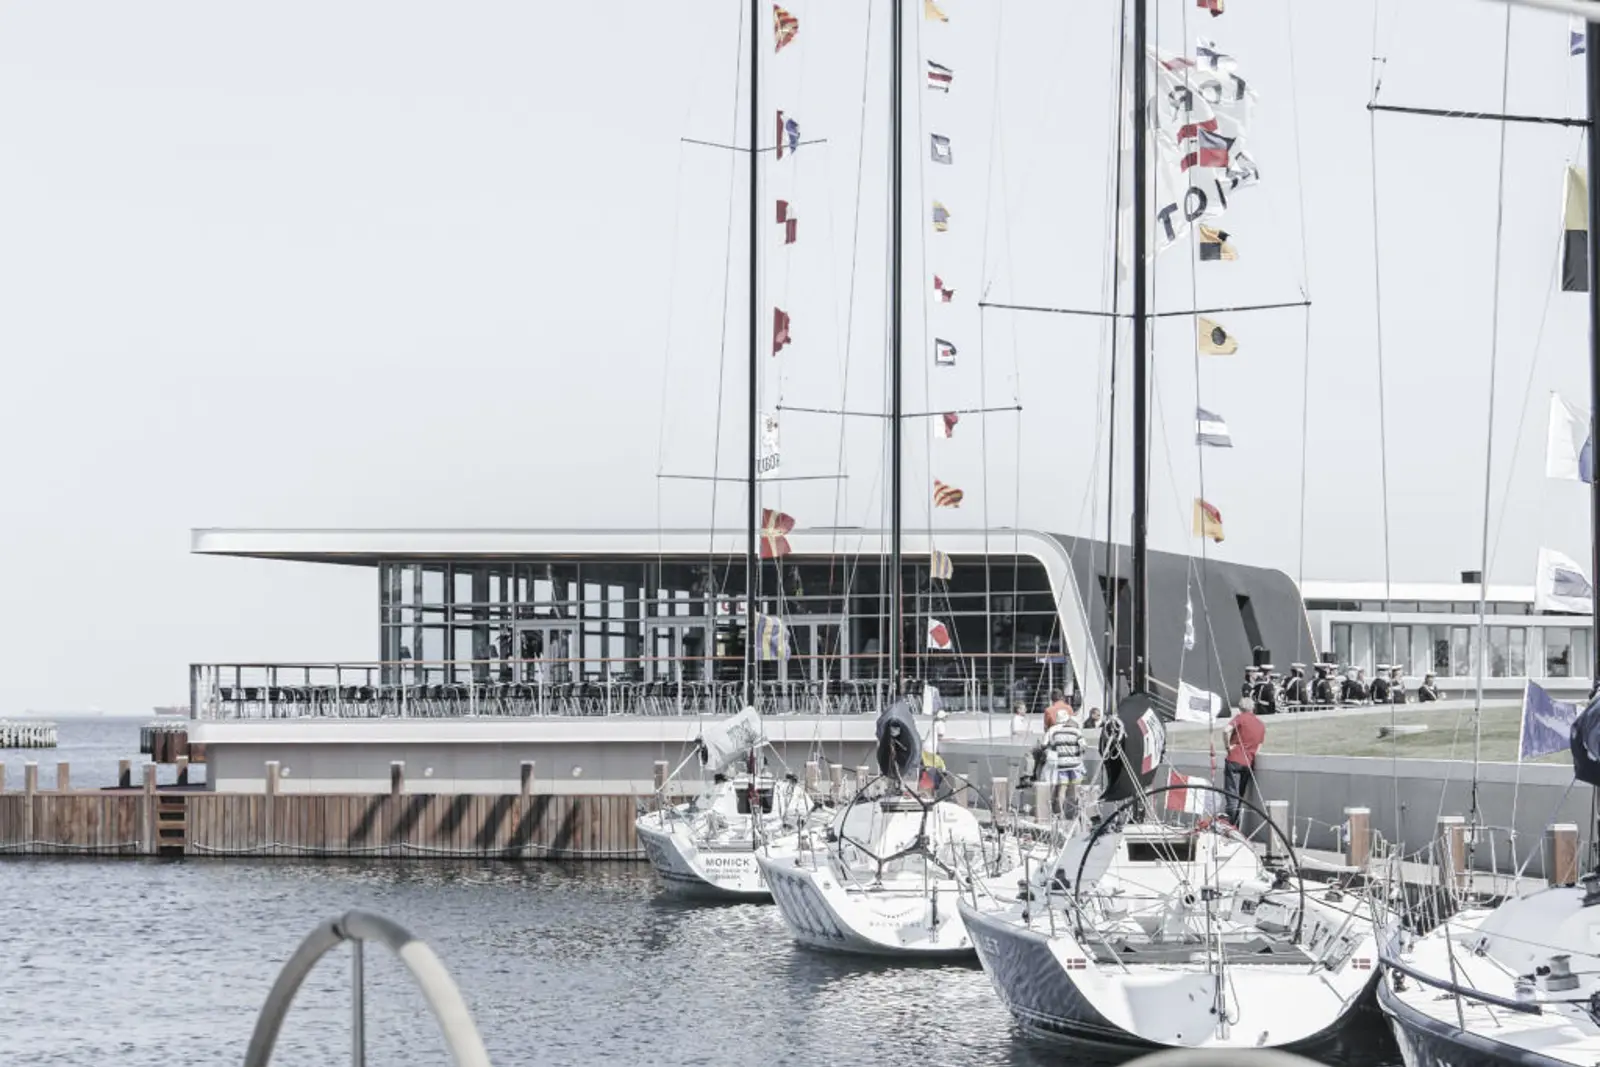 kongelig dansk yachtklub